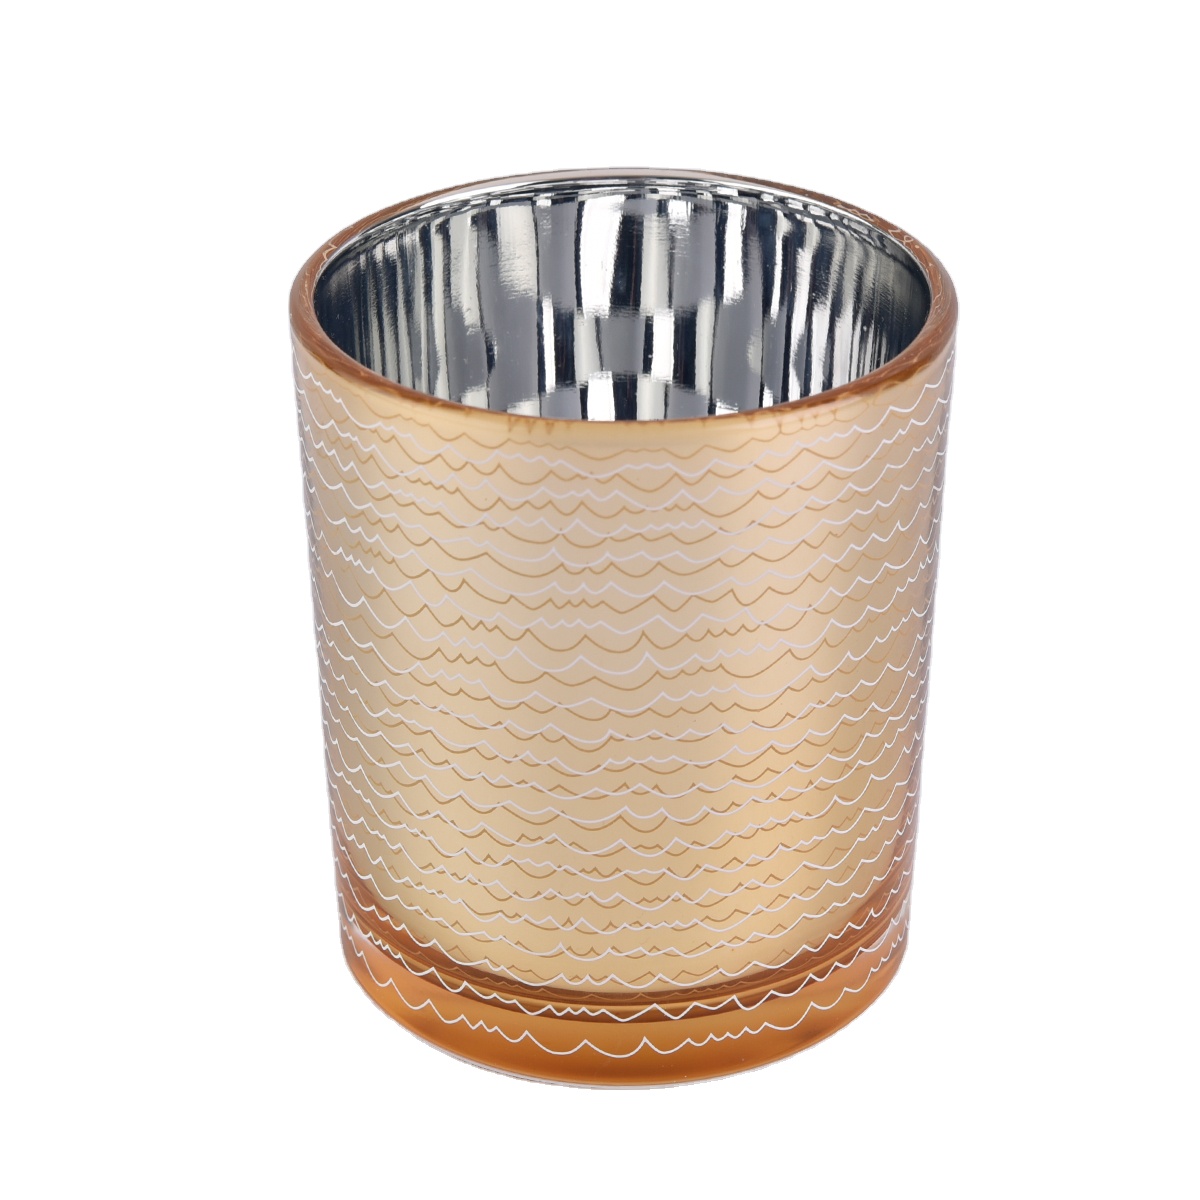 Wholesales glass electroplating gold candle jars holder 8 oz 10 oz